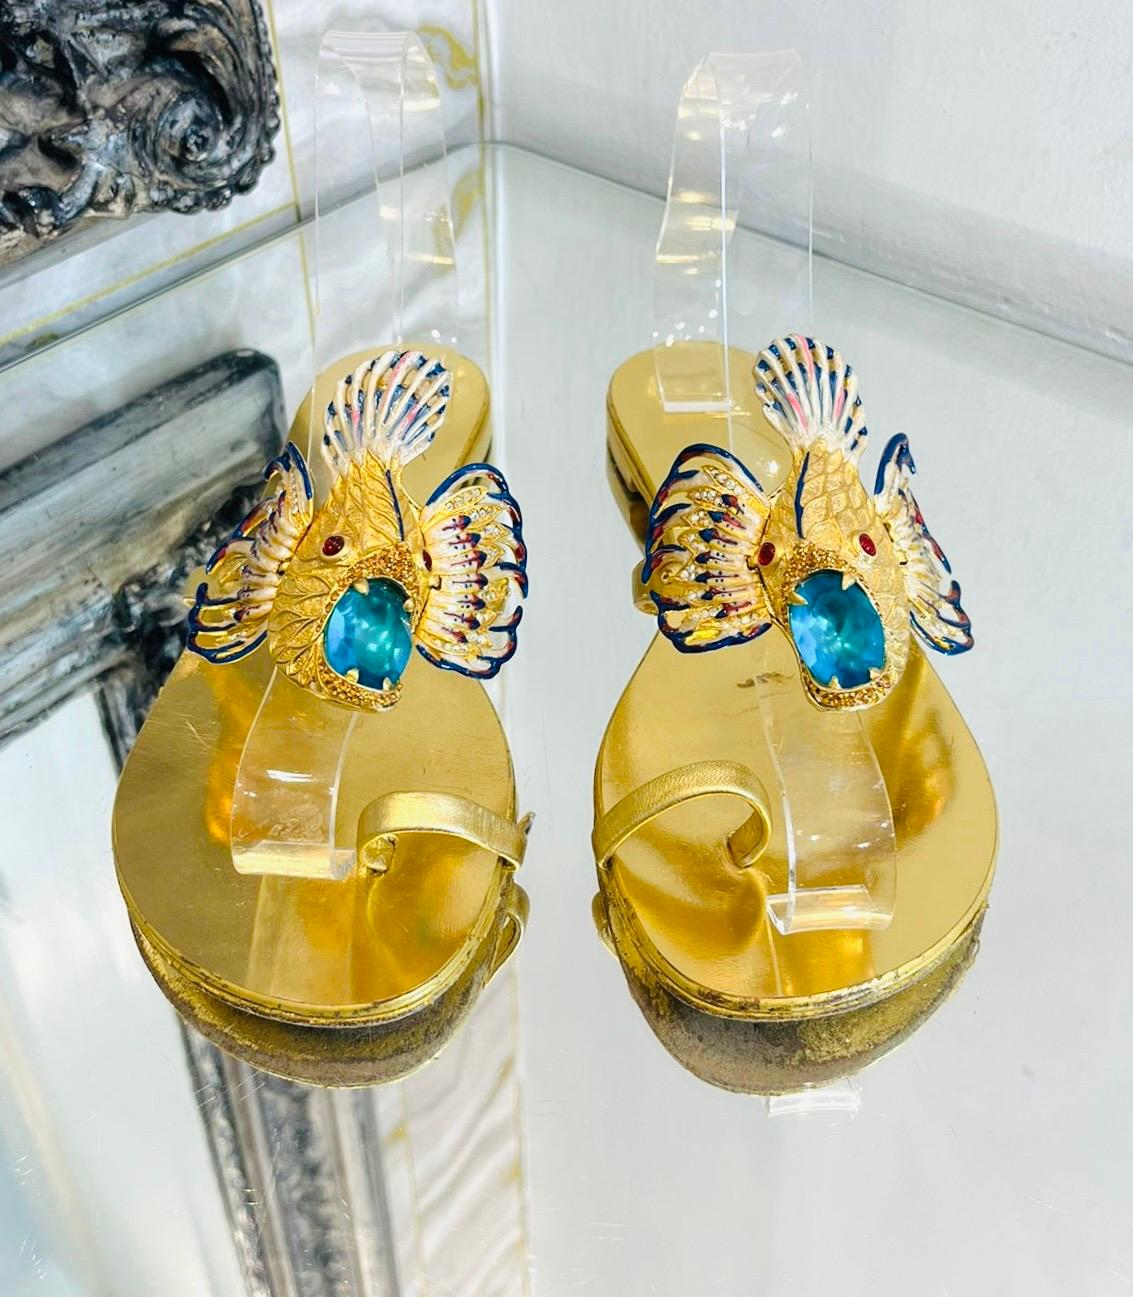 Giuseppe Zanotti Metallic-Sandalen aus Leder mit Lederverzierung

Die ikonischen Sandalen sind aus laminiertem Leder gefertigt und mit dem mit bunten Kristallen besetzten Accessoire 